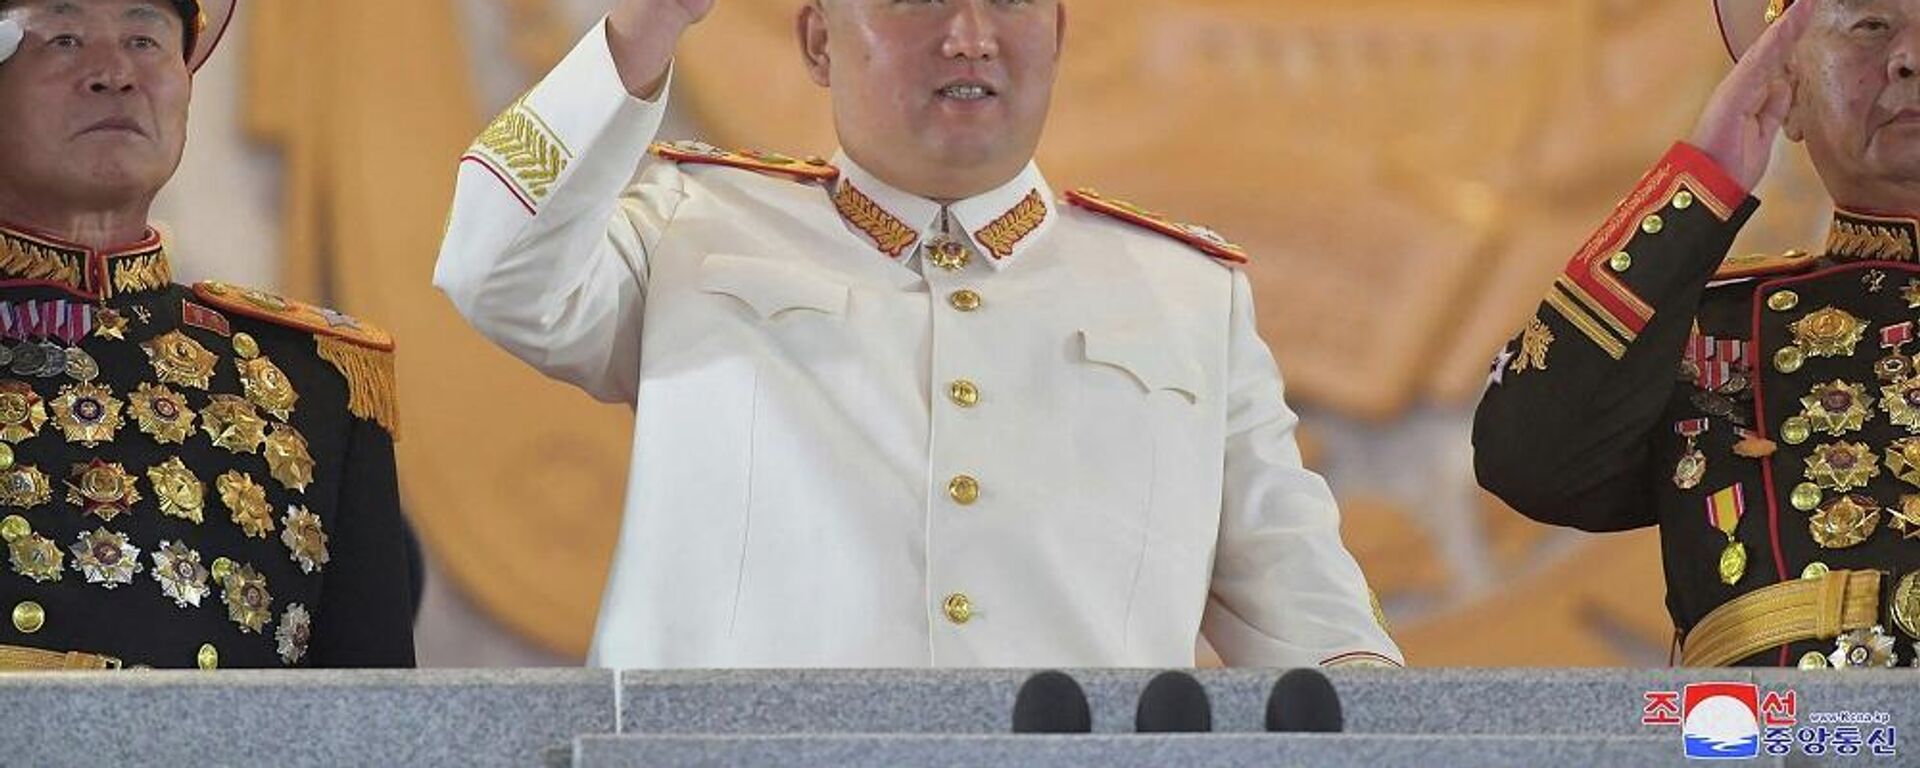 زعيم كوريا الشمالية، كيم جونغ أون، يشارك في عرض عسكري كبير أقيم في ساحة كيم إيل سونغ في بيونغ يانغ، 26 نيسان/ أبريل 2022 - سبوتنيك عربي, 1920, 28.04.2022